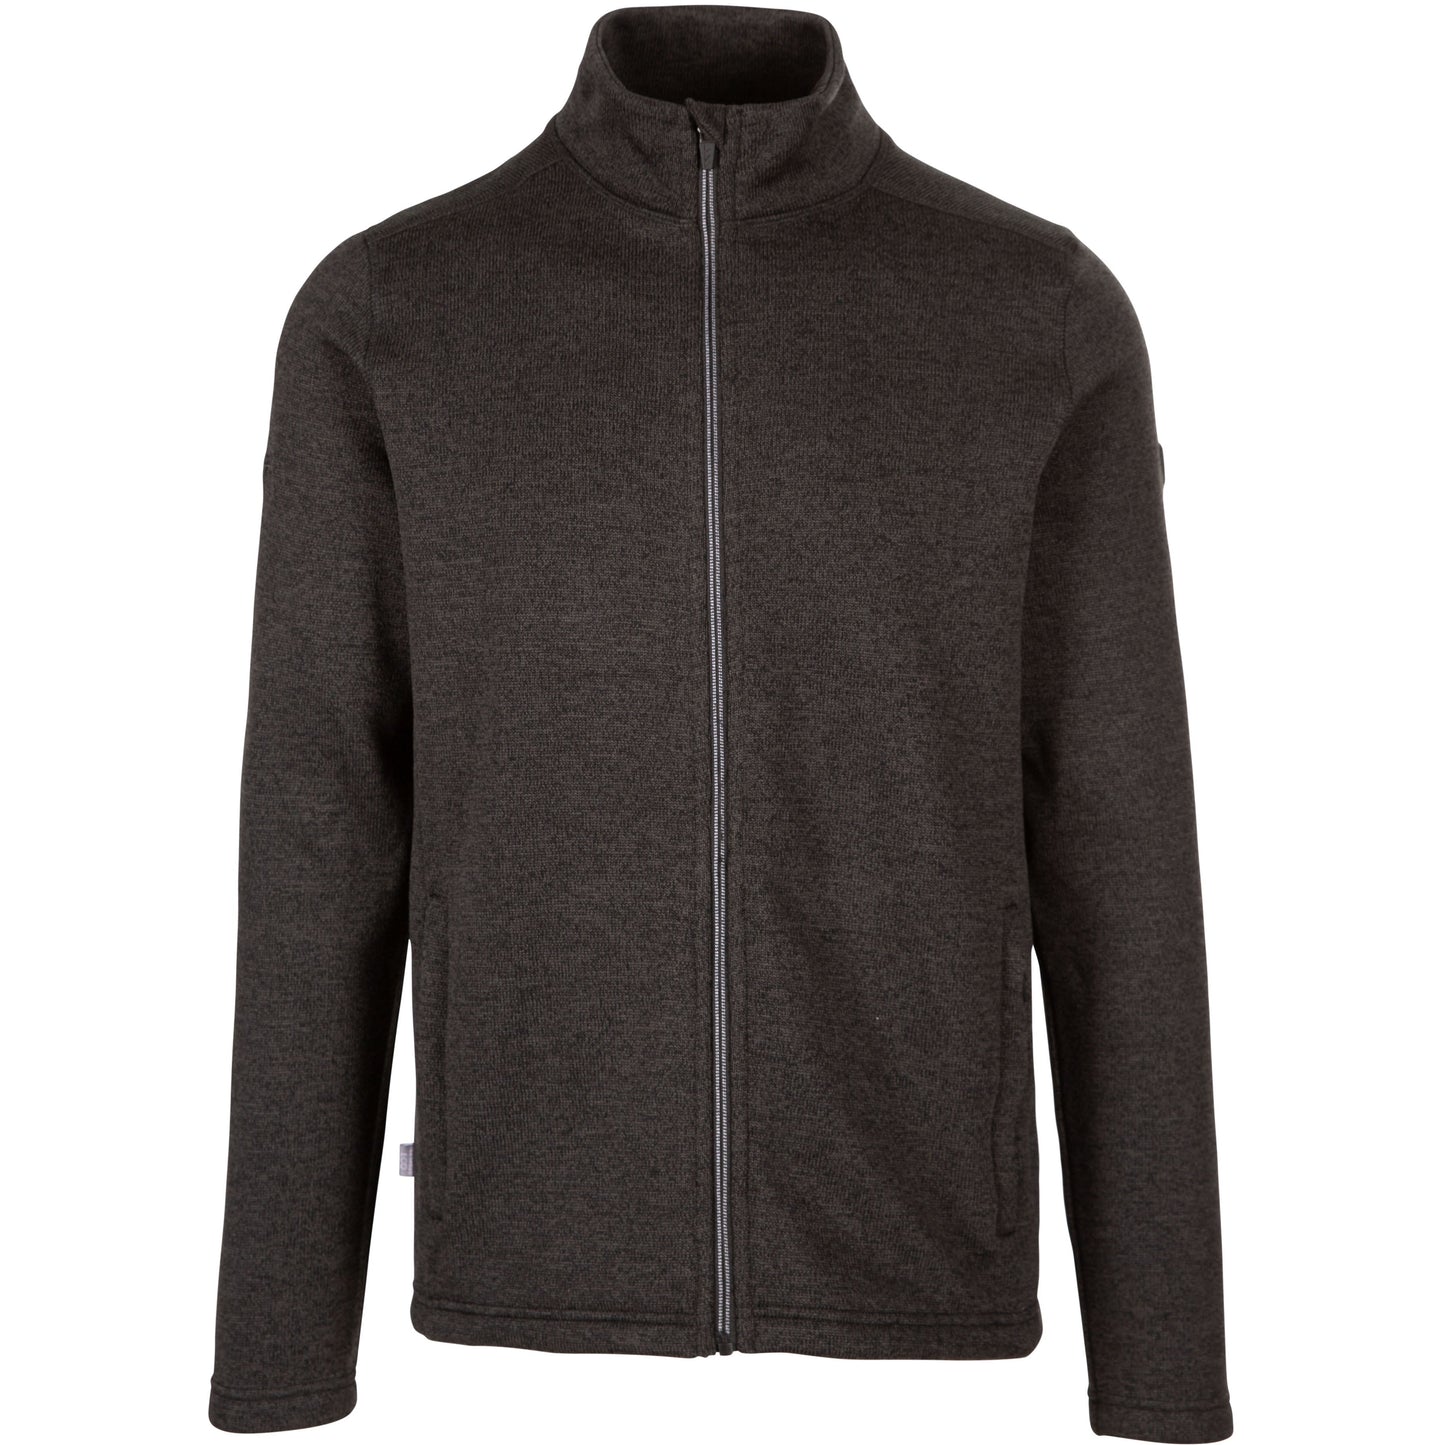 Rundel Men's Fleece Top / Jacket in Dark Grey Marl